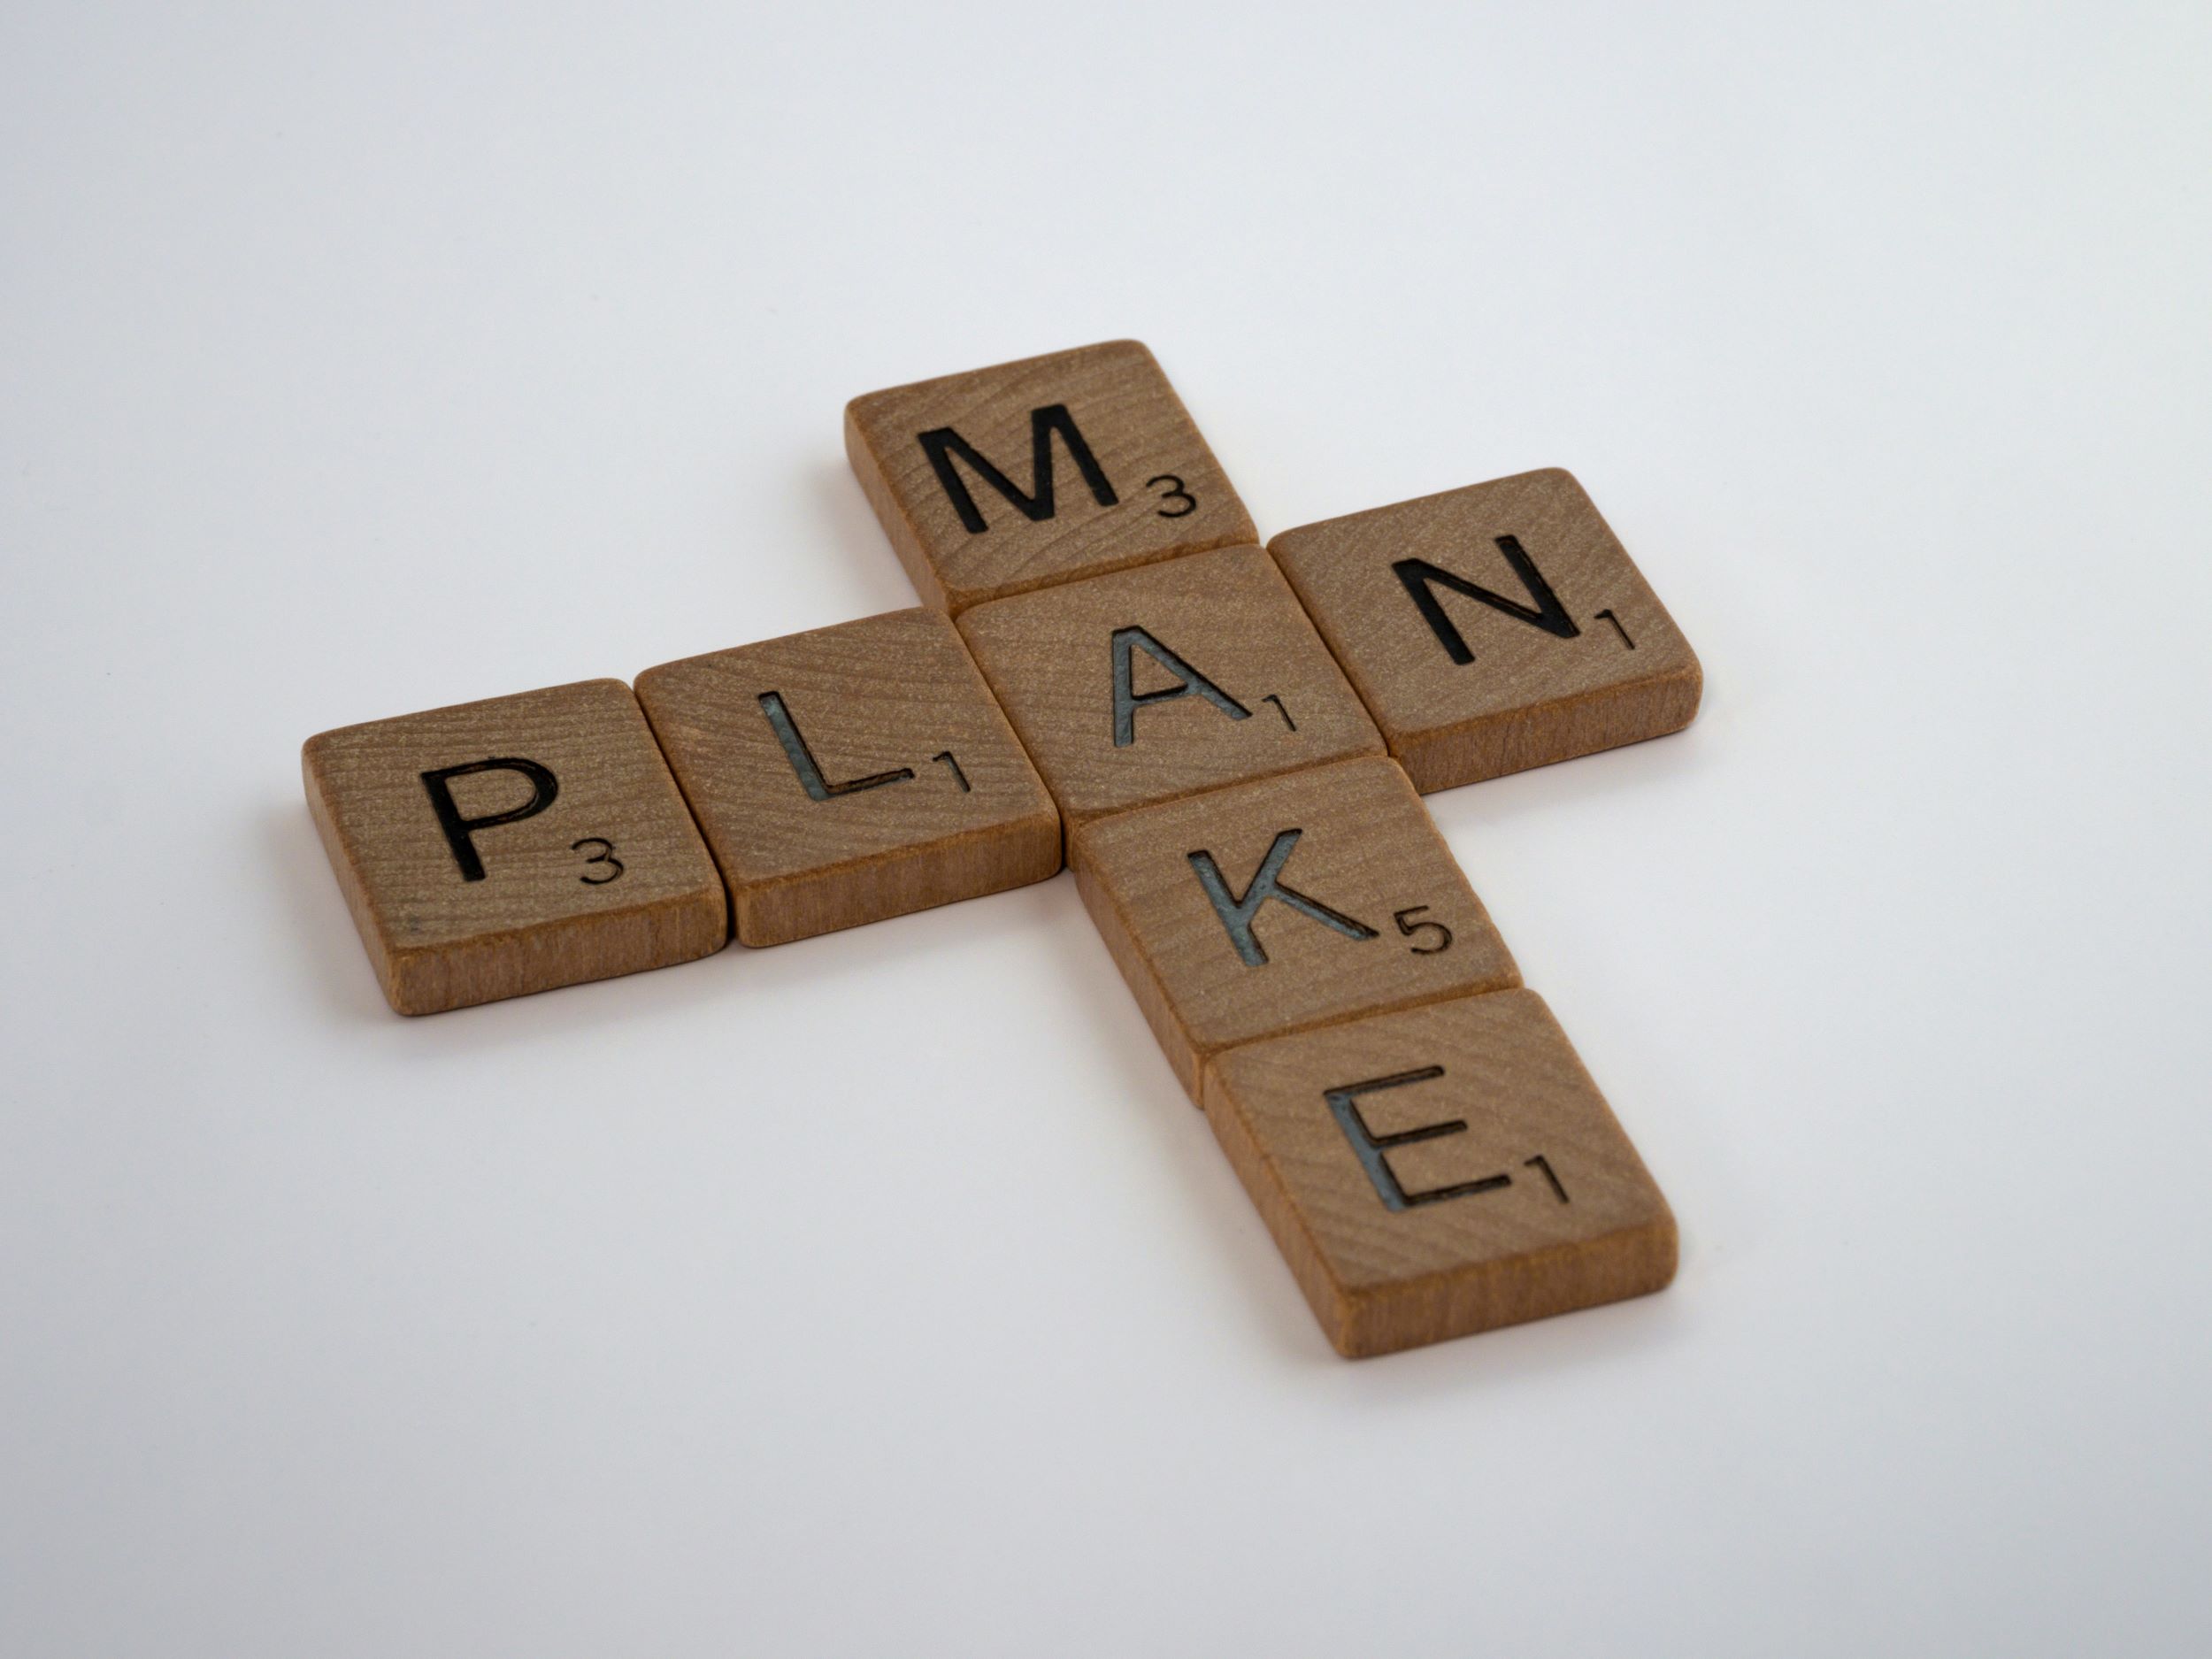 scrabble tiles that spell "make plan"